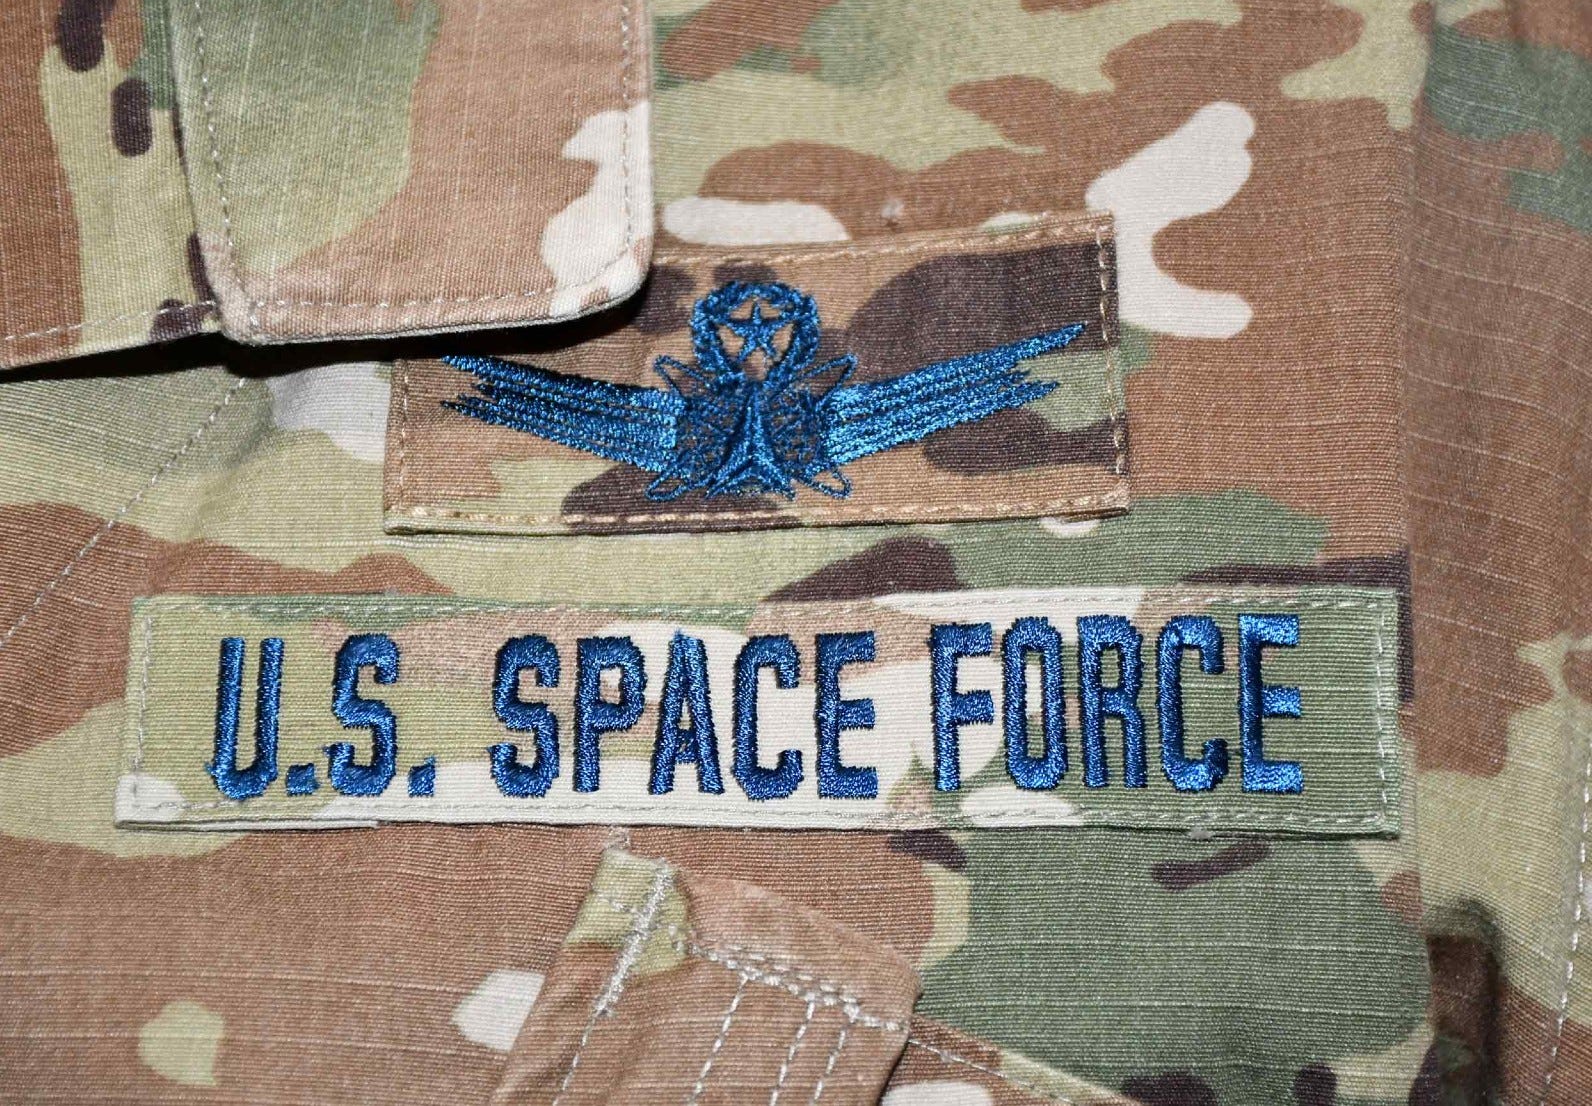 US Space uniform